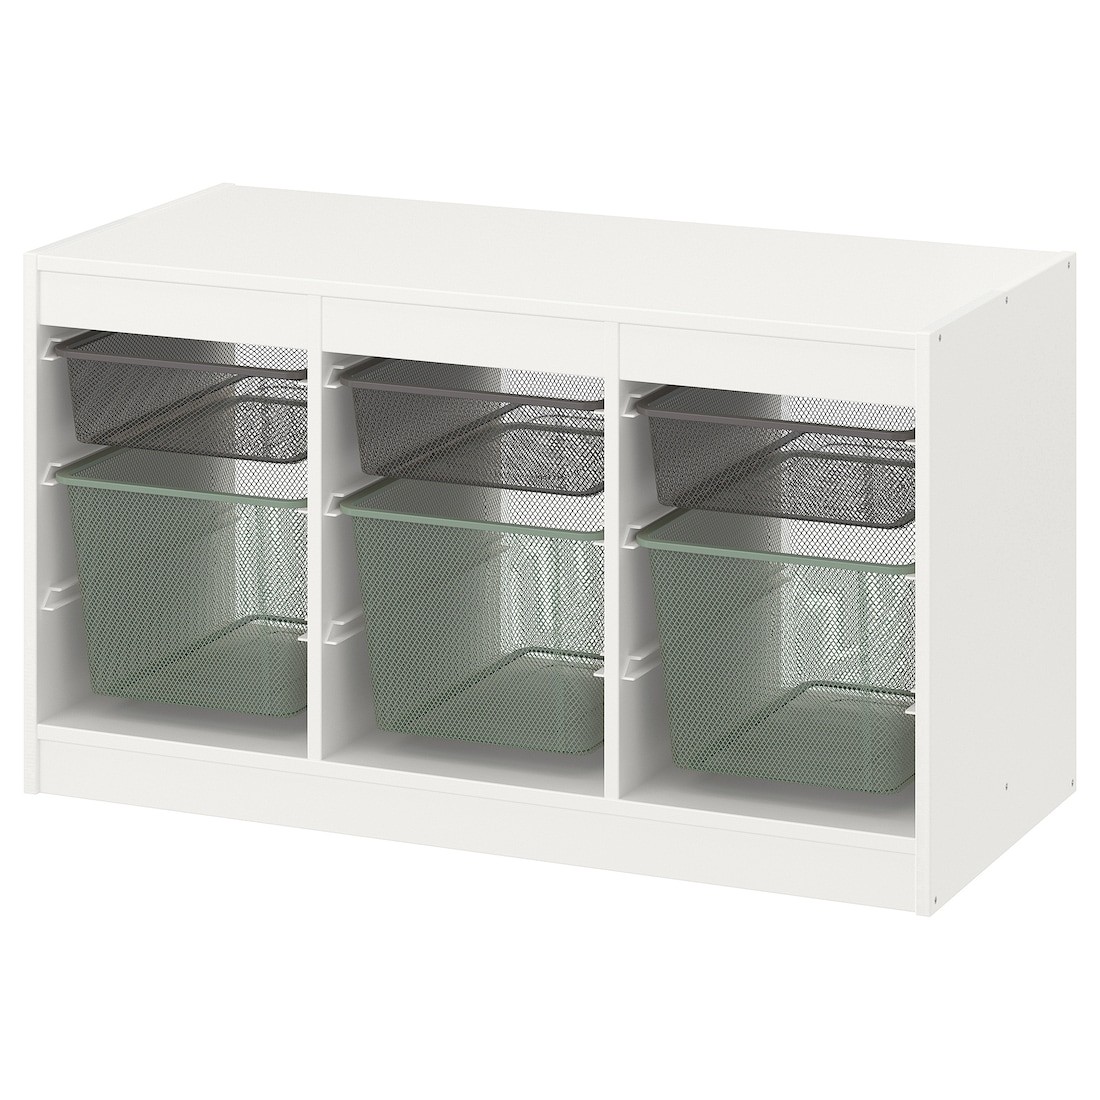 IKEA TROFAST ТРУФАСТ Комбинация для хранения + контейнеры, белый темно-серый / светлый зелено-серый, 99x44x56 см 89480317 | 894.803.17